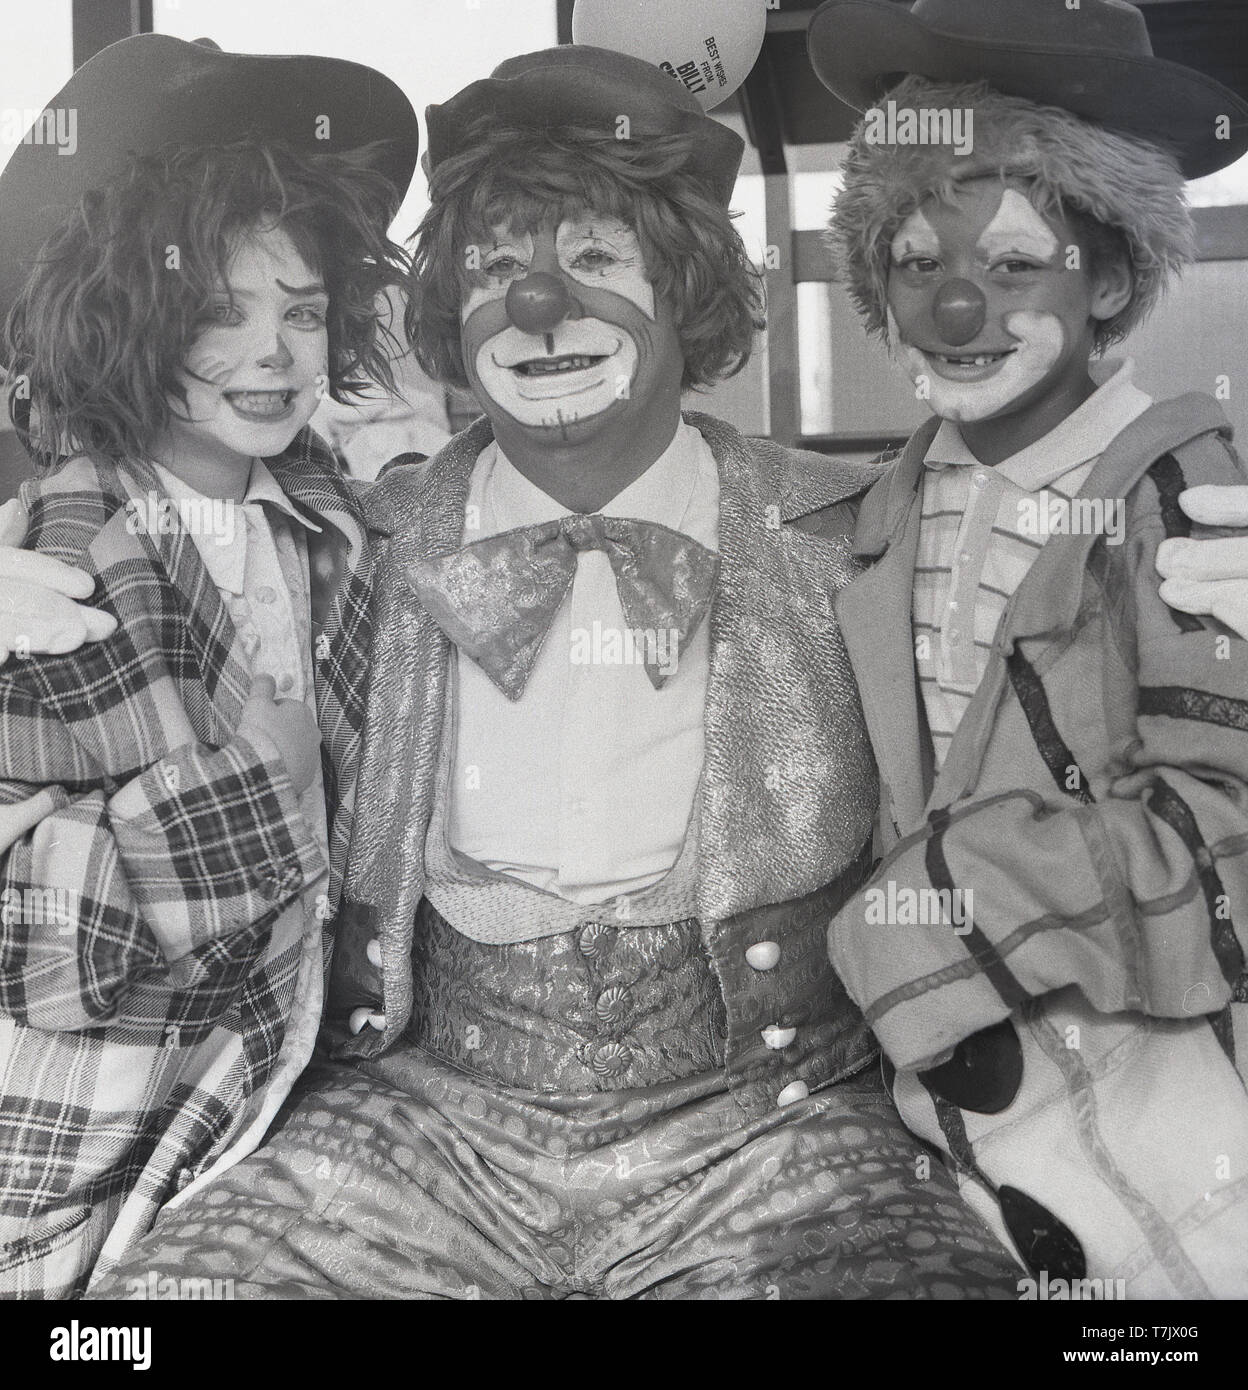 Années 1960, historique, un clown de cirque avec deux jeunes enfants de l'école habillés et avec leurs visages peints comme un clown, England, UK. Banque D'Images